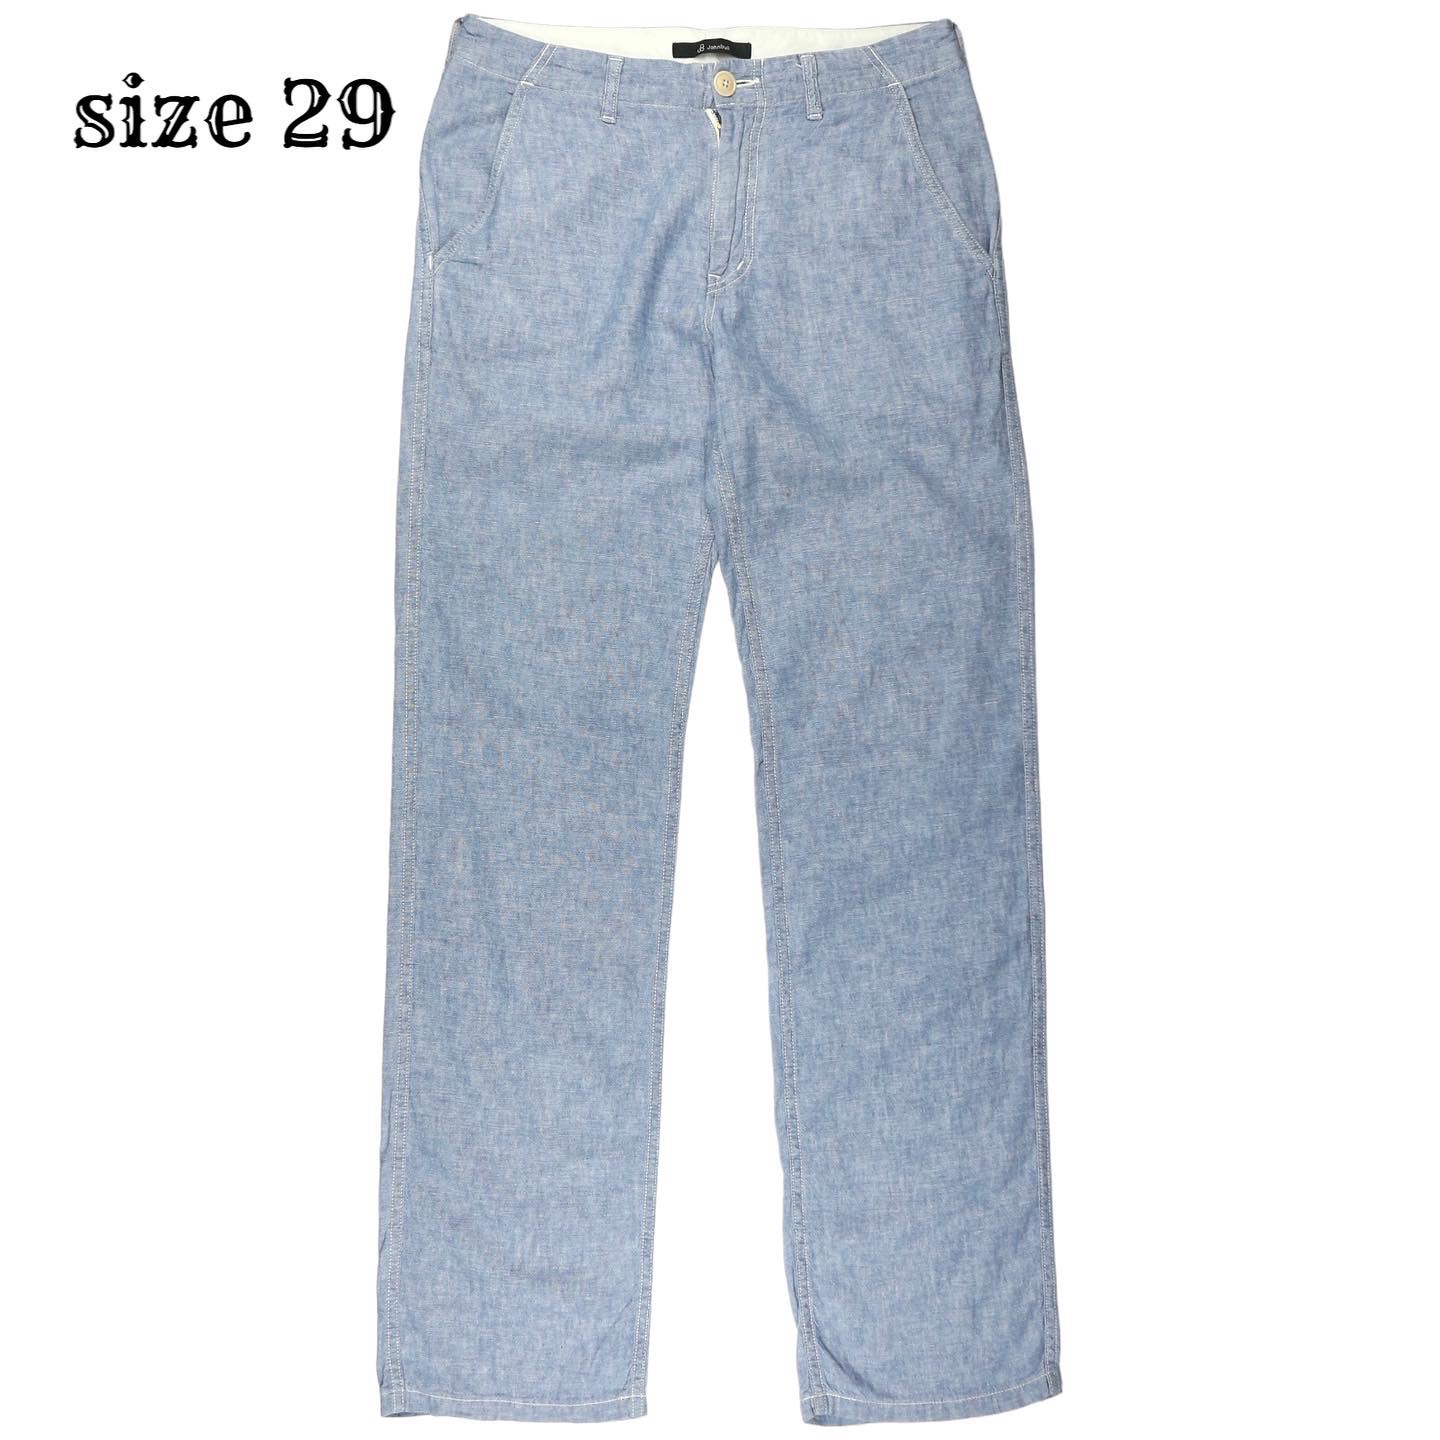 Johnbull Pants Size 29